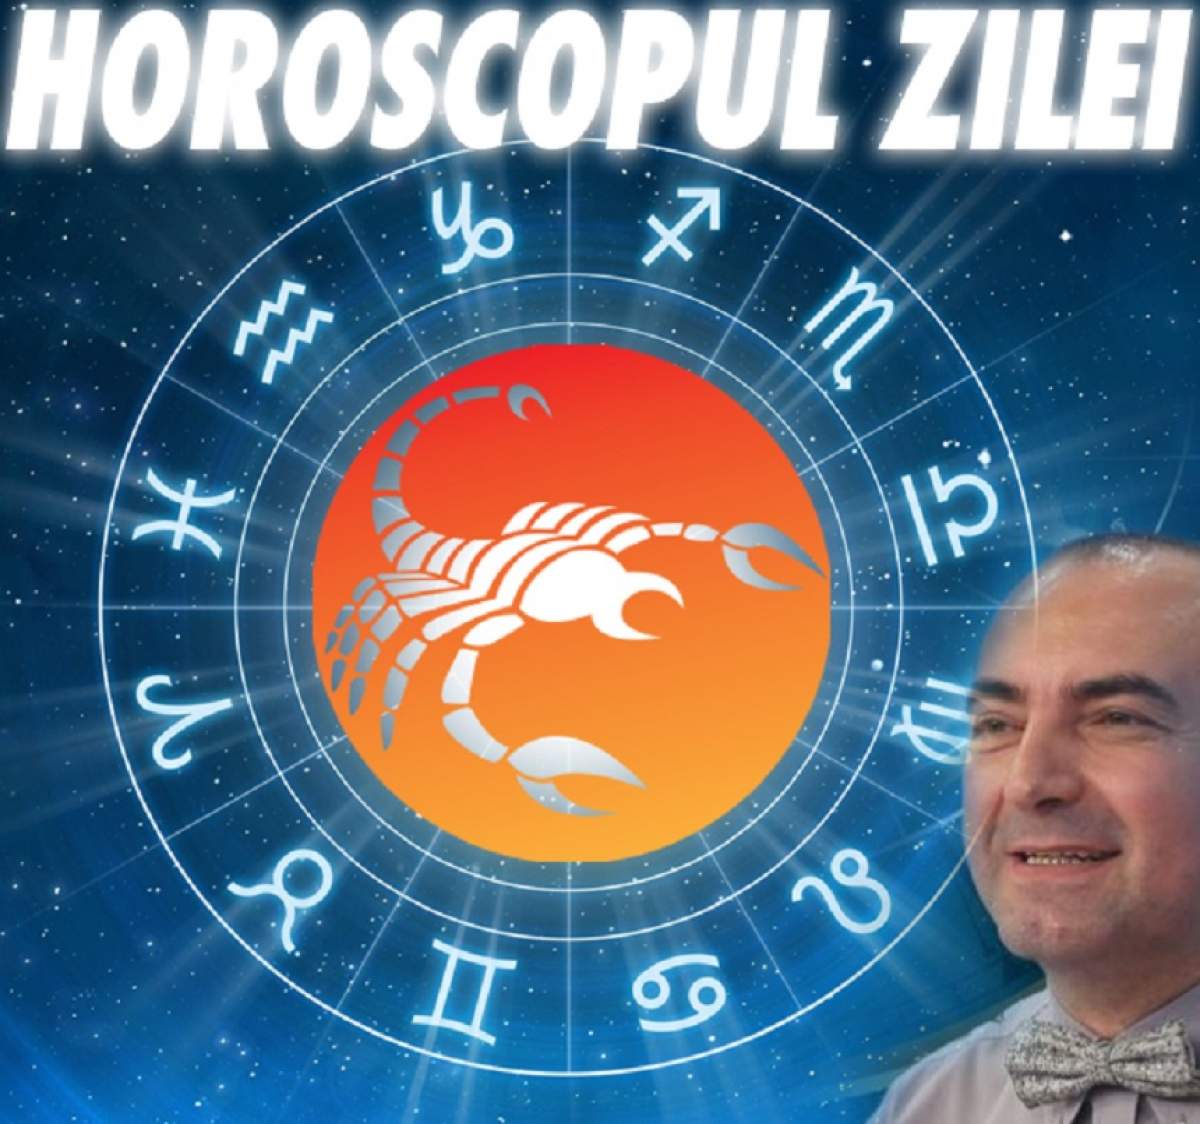 HOROSCOPUL ZILEI - 2 IULIE: Nativi Scorpion, vă așteaptă noi experiențe profesionale